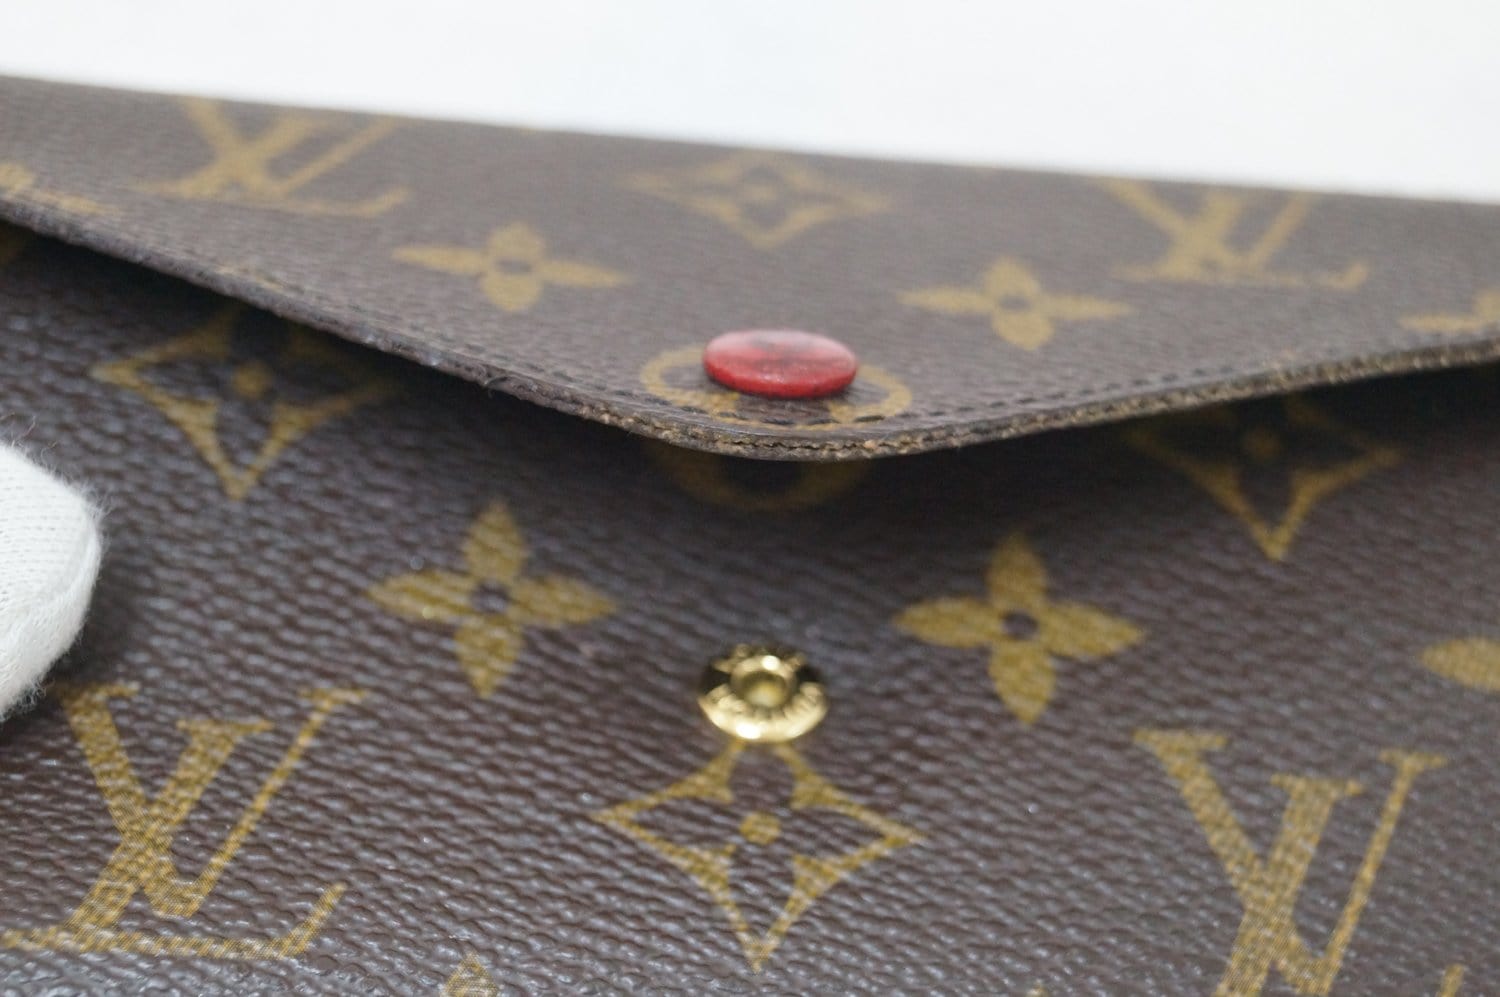 Authentic Louis Vuitton Sarah Wallet – JOY'S CLASSY COLLECTION